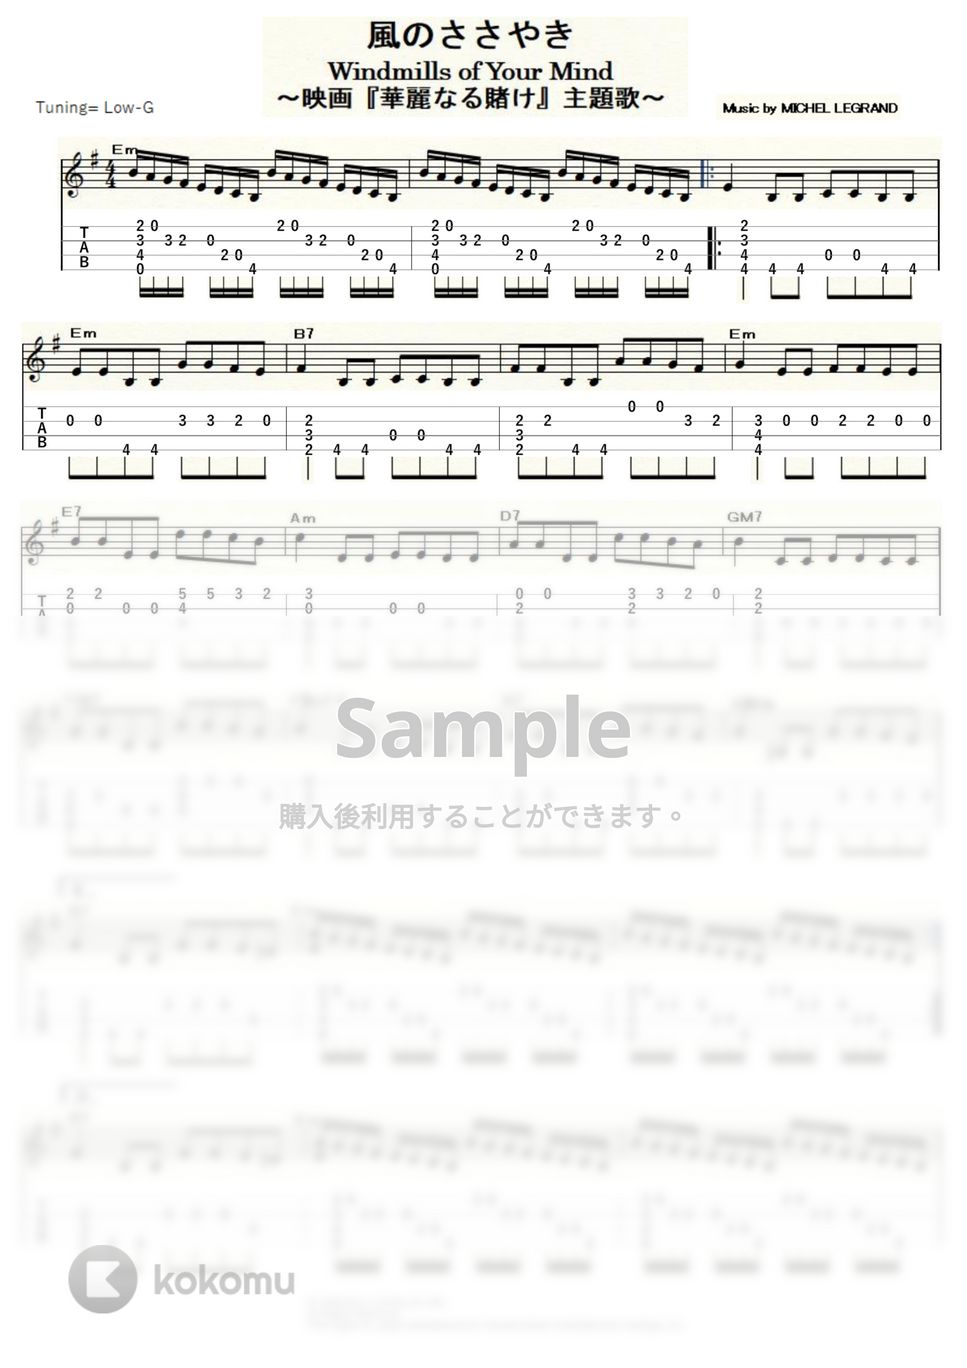 華麗なる賭け - 風のささやき (ｳｸﾚﾚｿﾛ / Low-G / 中級) by ukulelepapa